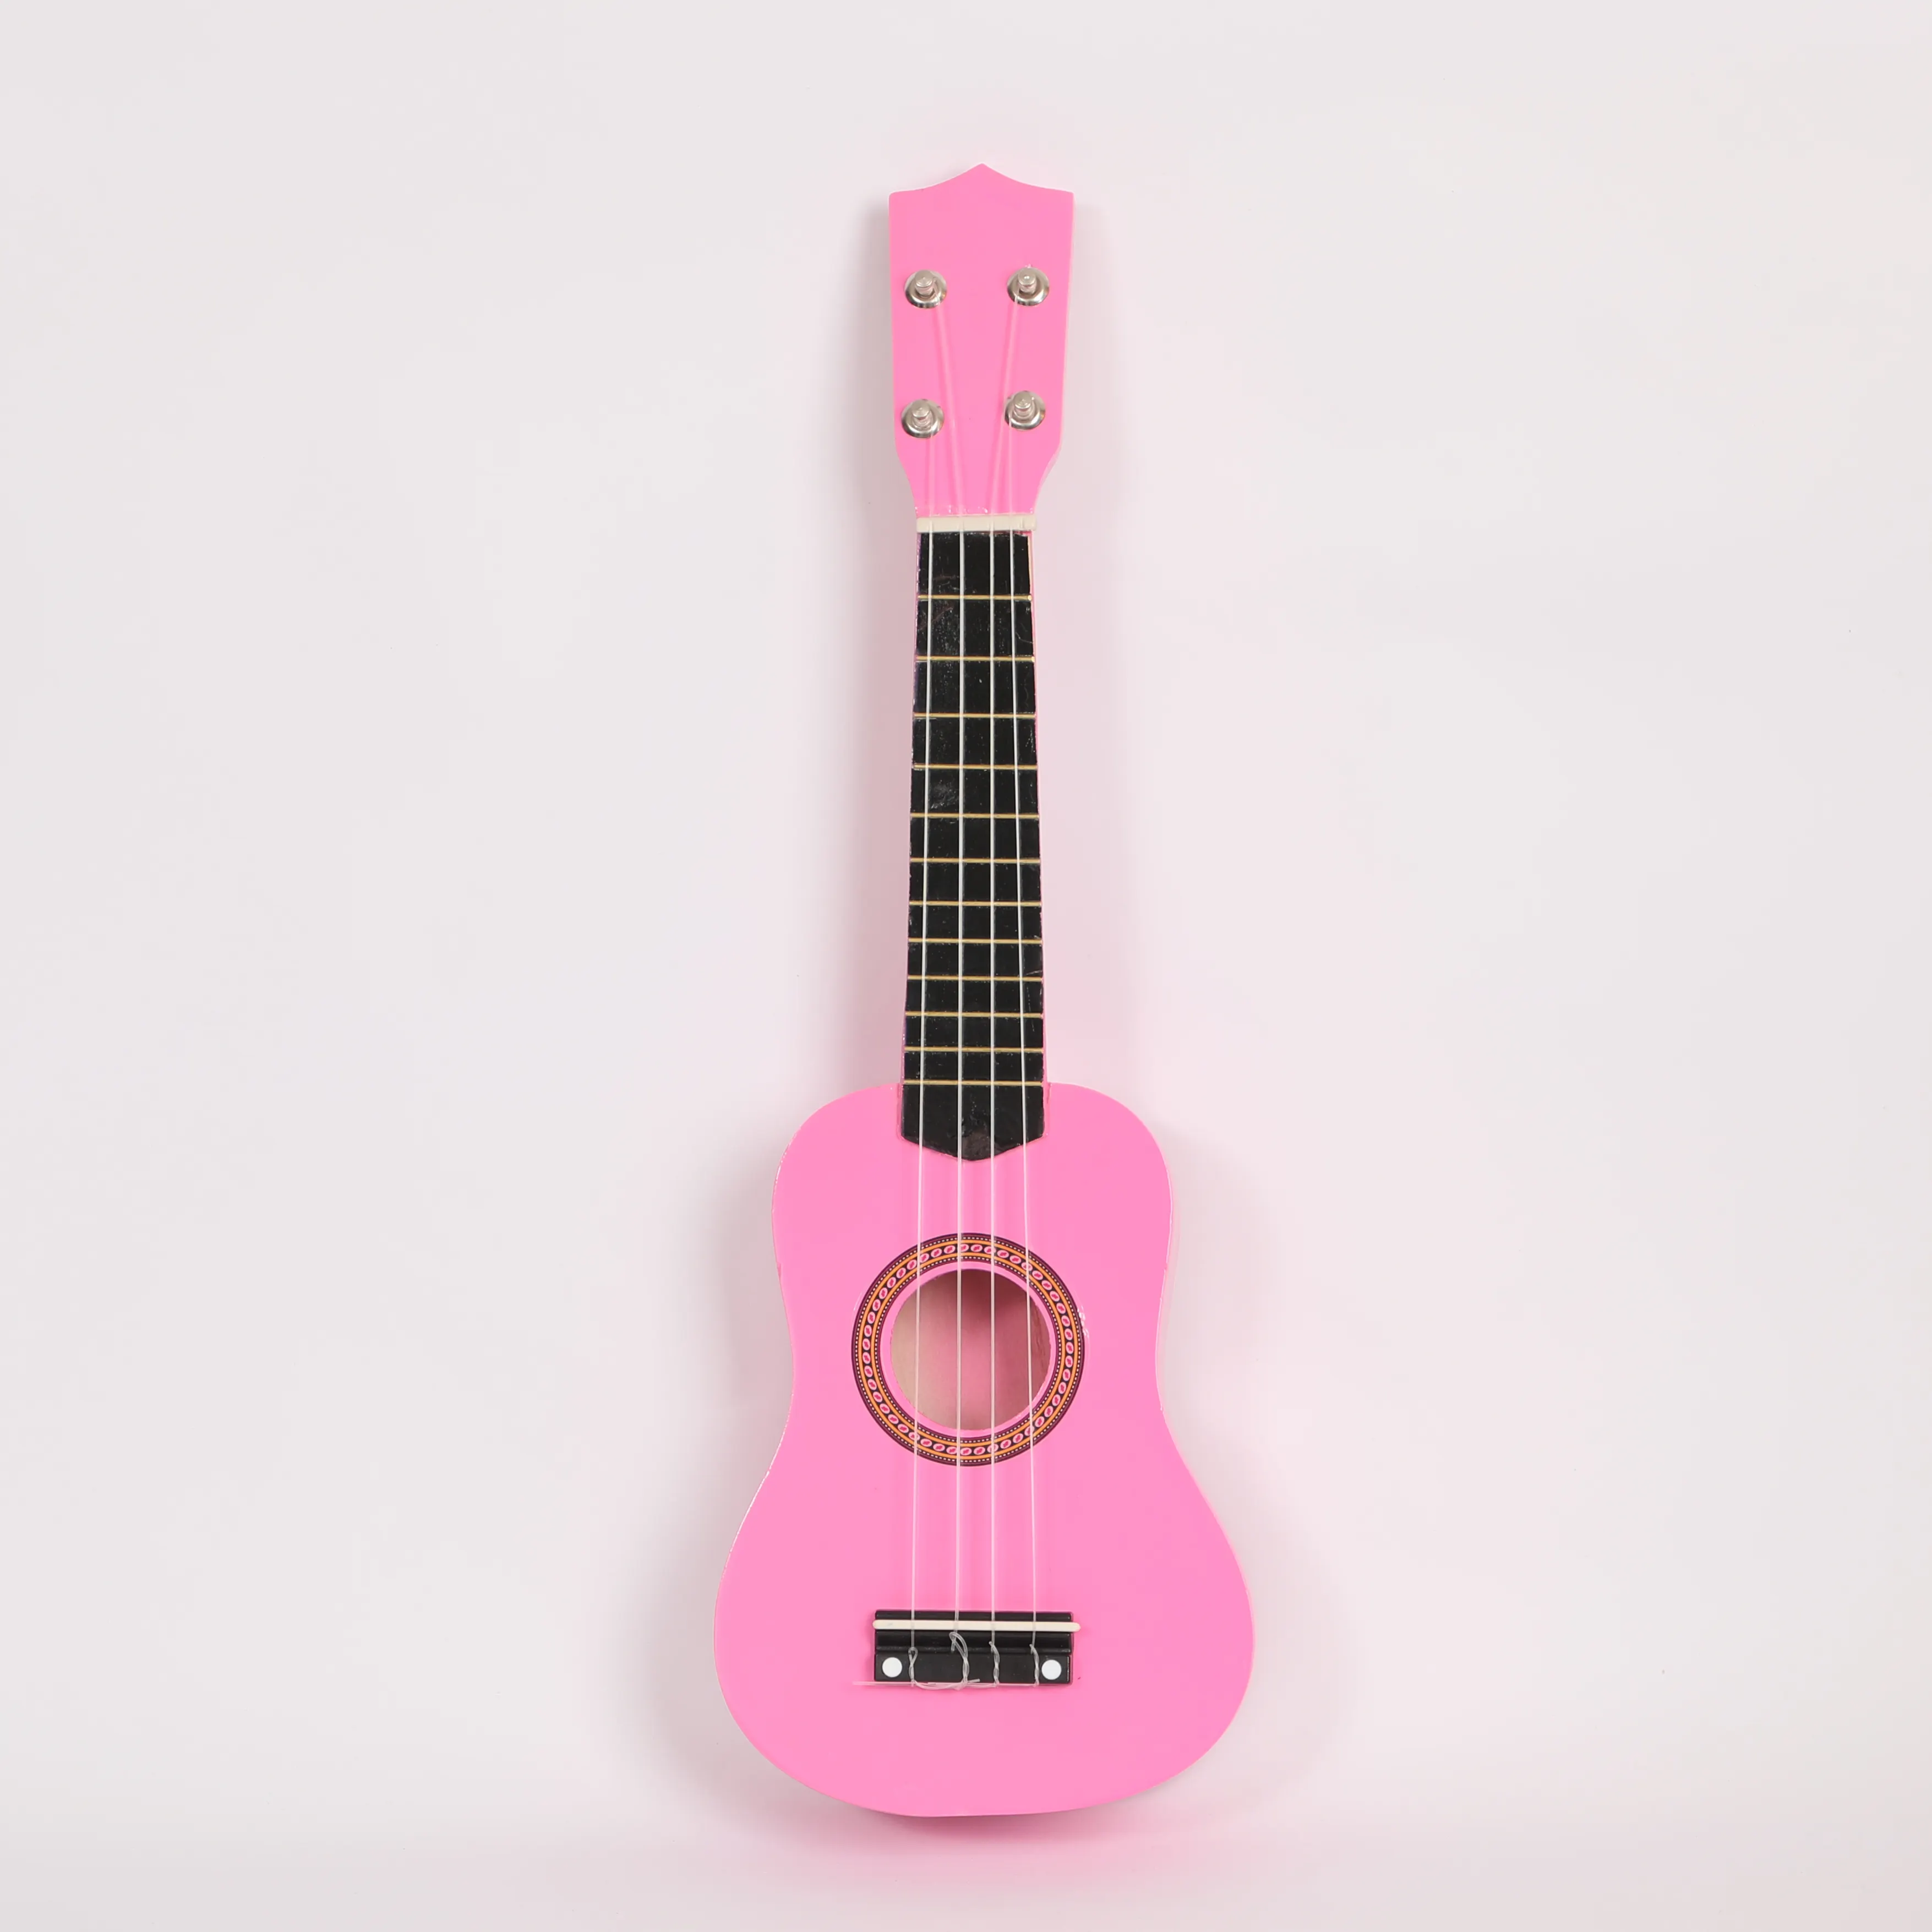 संगीत साधन लकड़ी मिनी ध्वनिक गिटार के लिए बच्चों